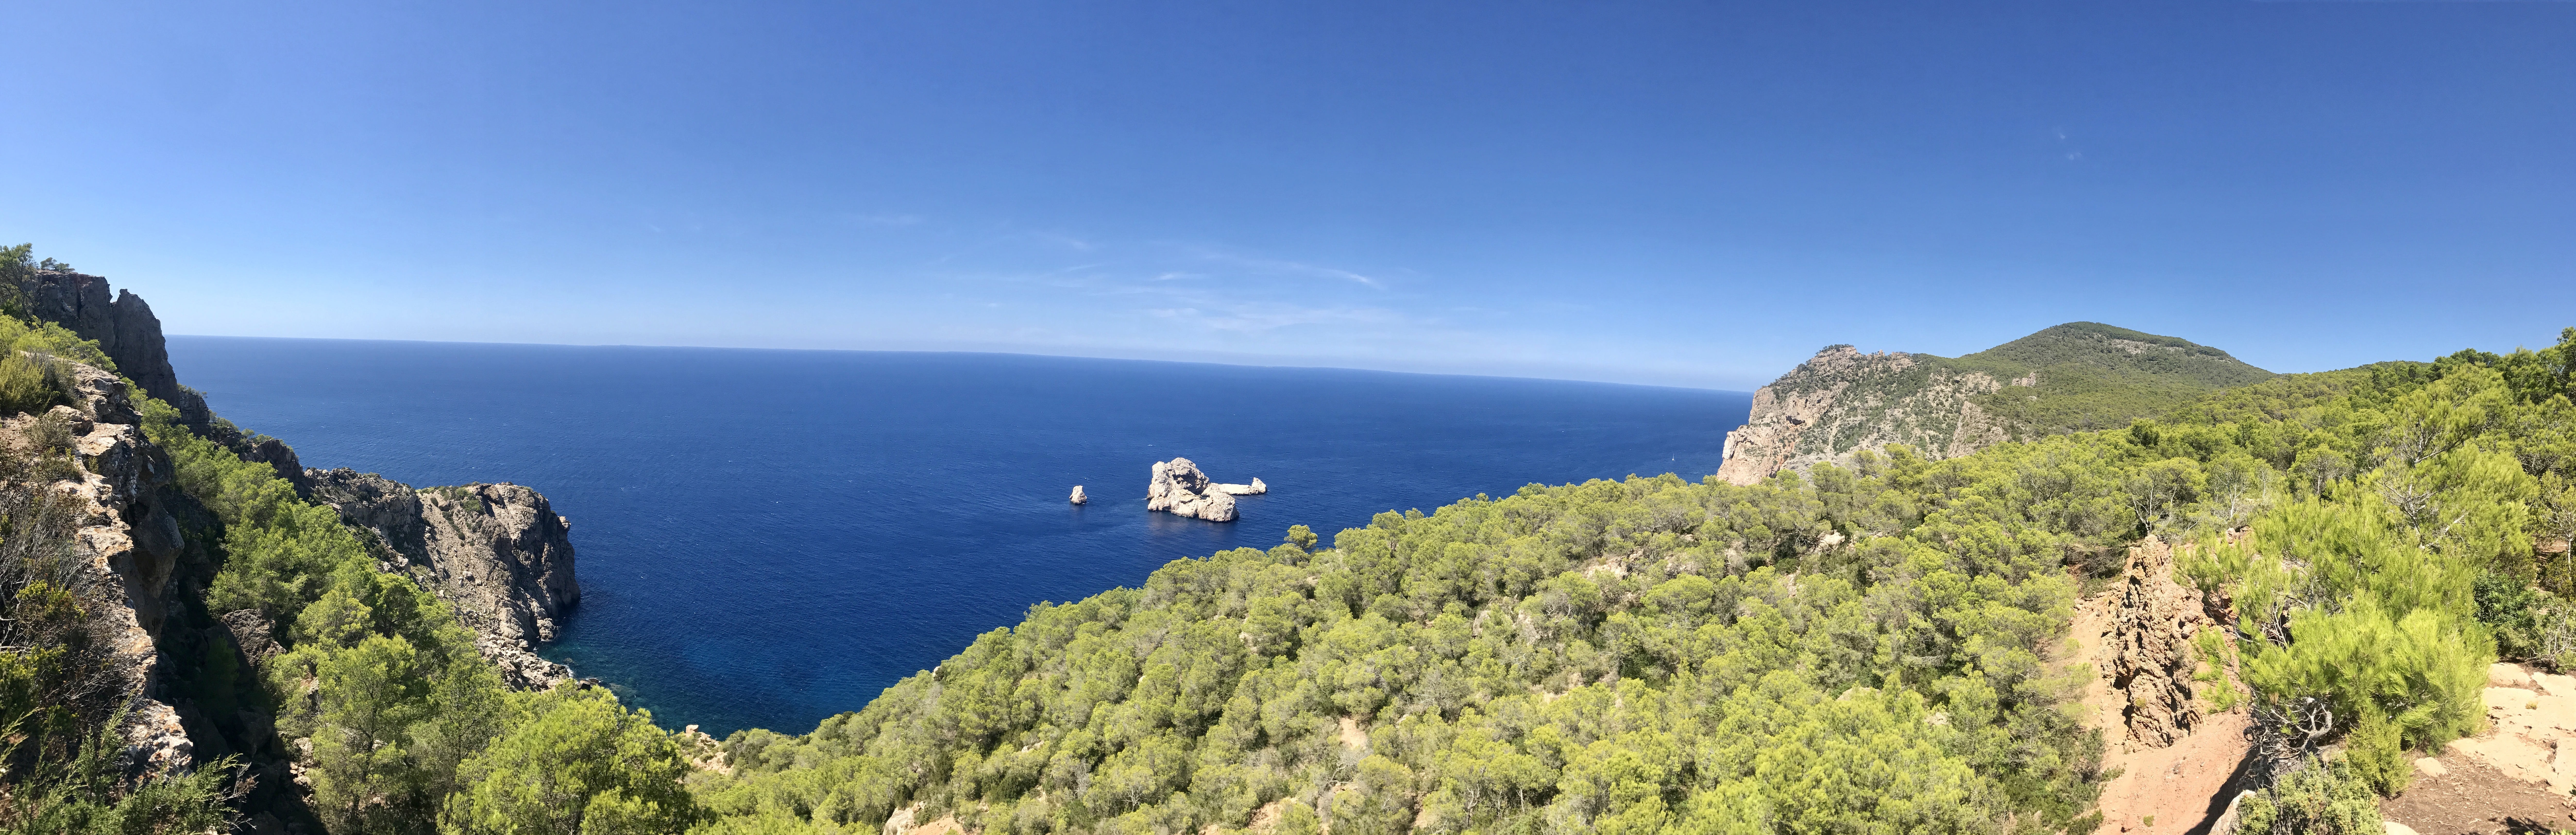 Plicht Beroep Bij elkaar passen Ibiza (Eivissa) Las Puertas del Cielo – Cala Es Corrals | La Odissea